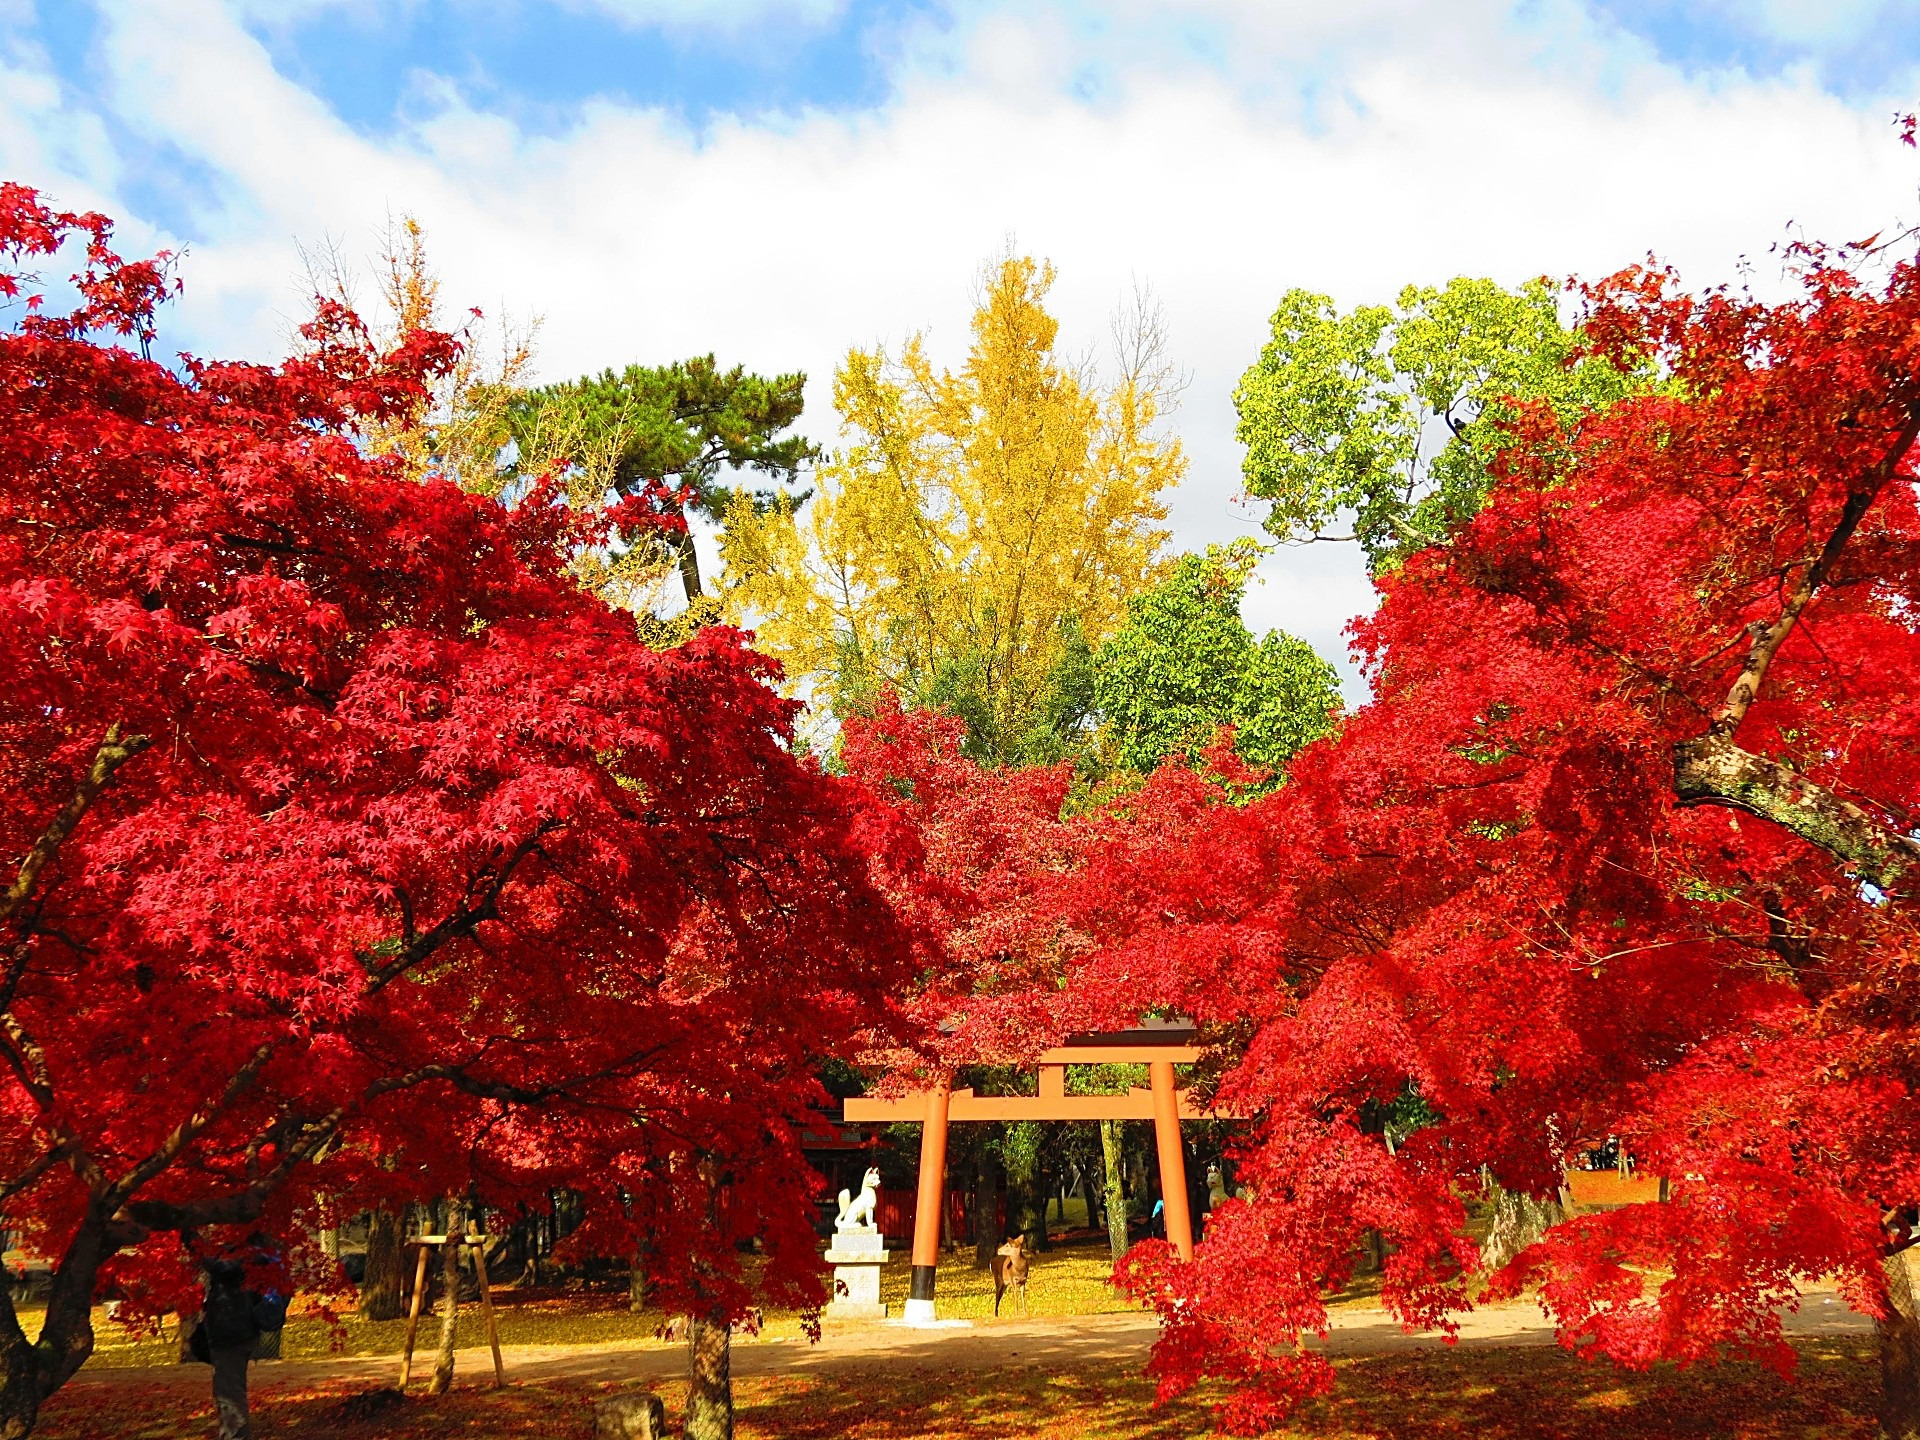 日本の風景 奈良公園睡稲荷社前の紅葉 壁紙19x1440 壁紙館